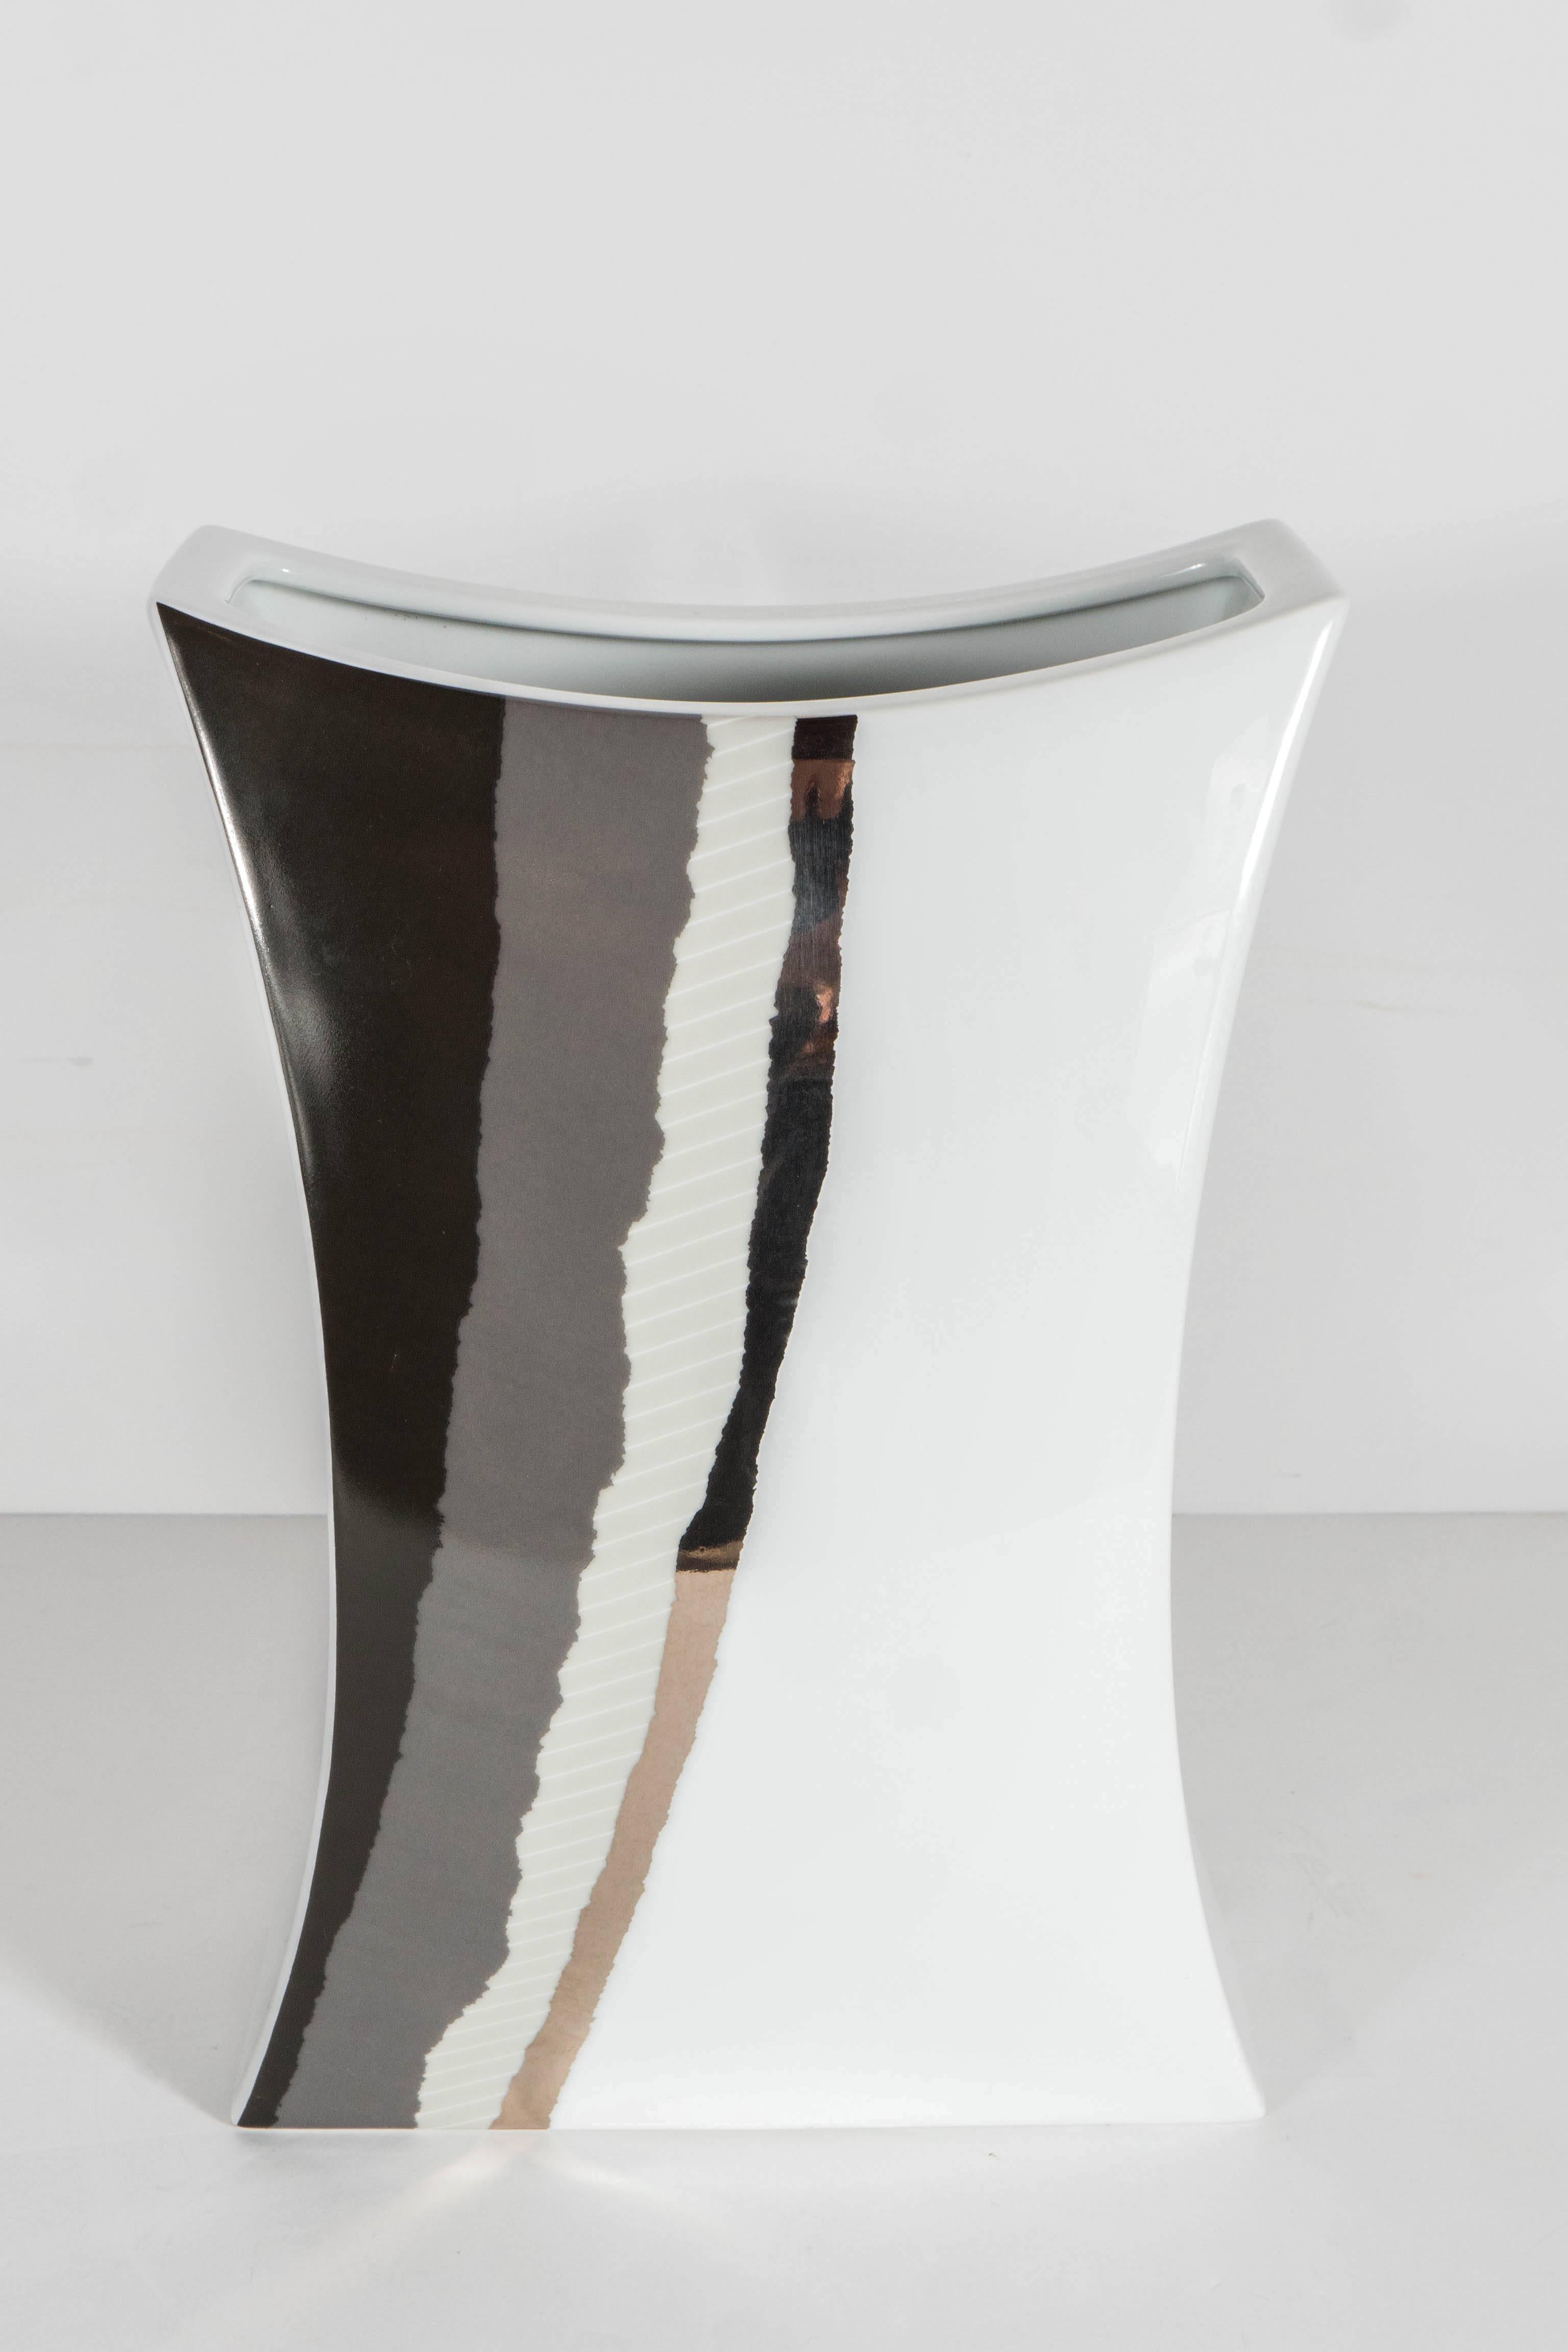 Beautiful Modernist Porcelain Vase by Jan van der Vaart for Rosenthal 1